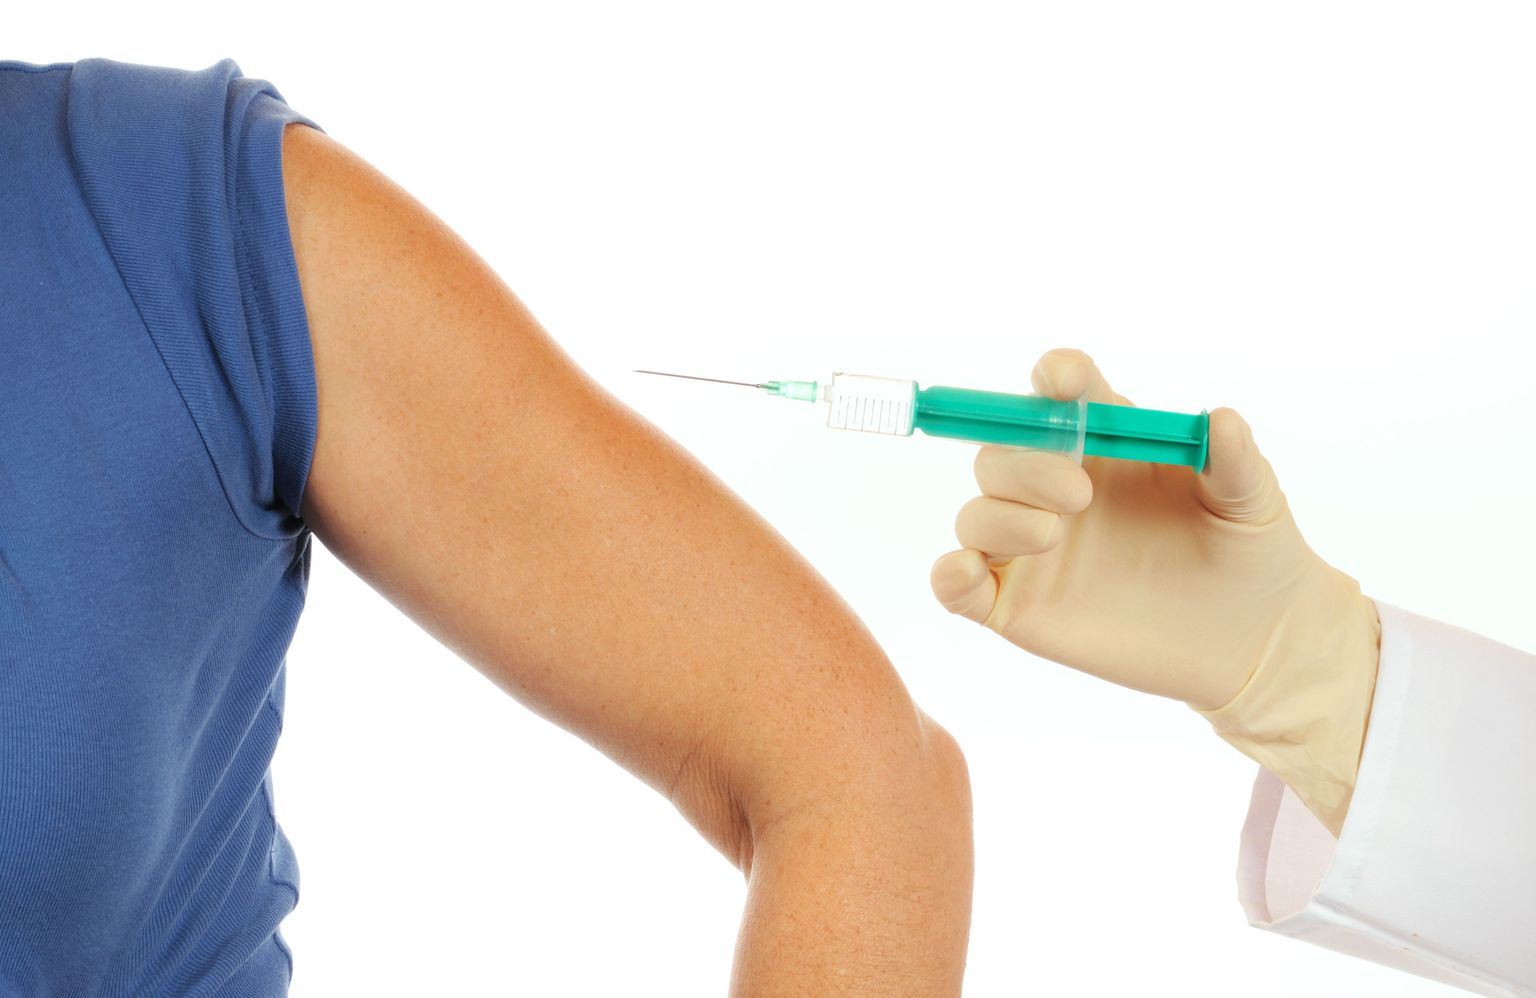 Vaktsineerimisega kaasnevad sageli müüdid, millel pole tegelikult alust.